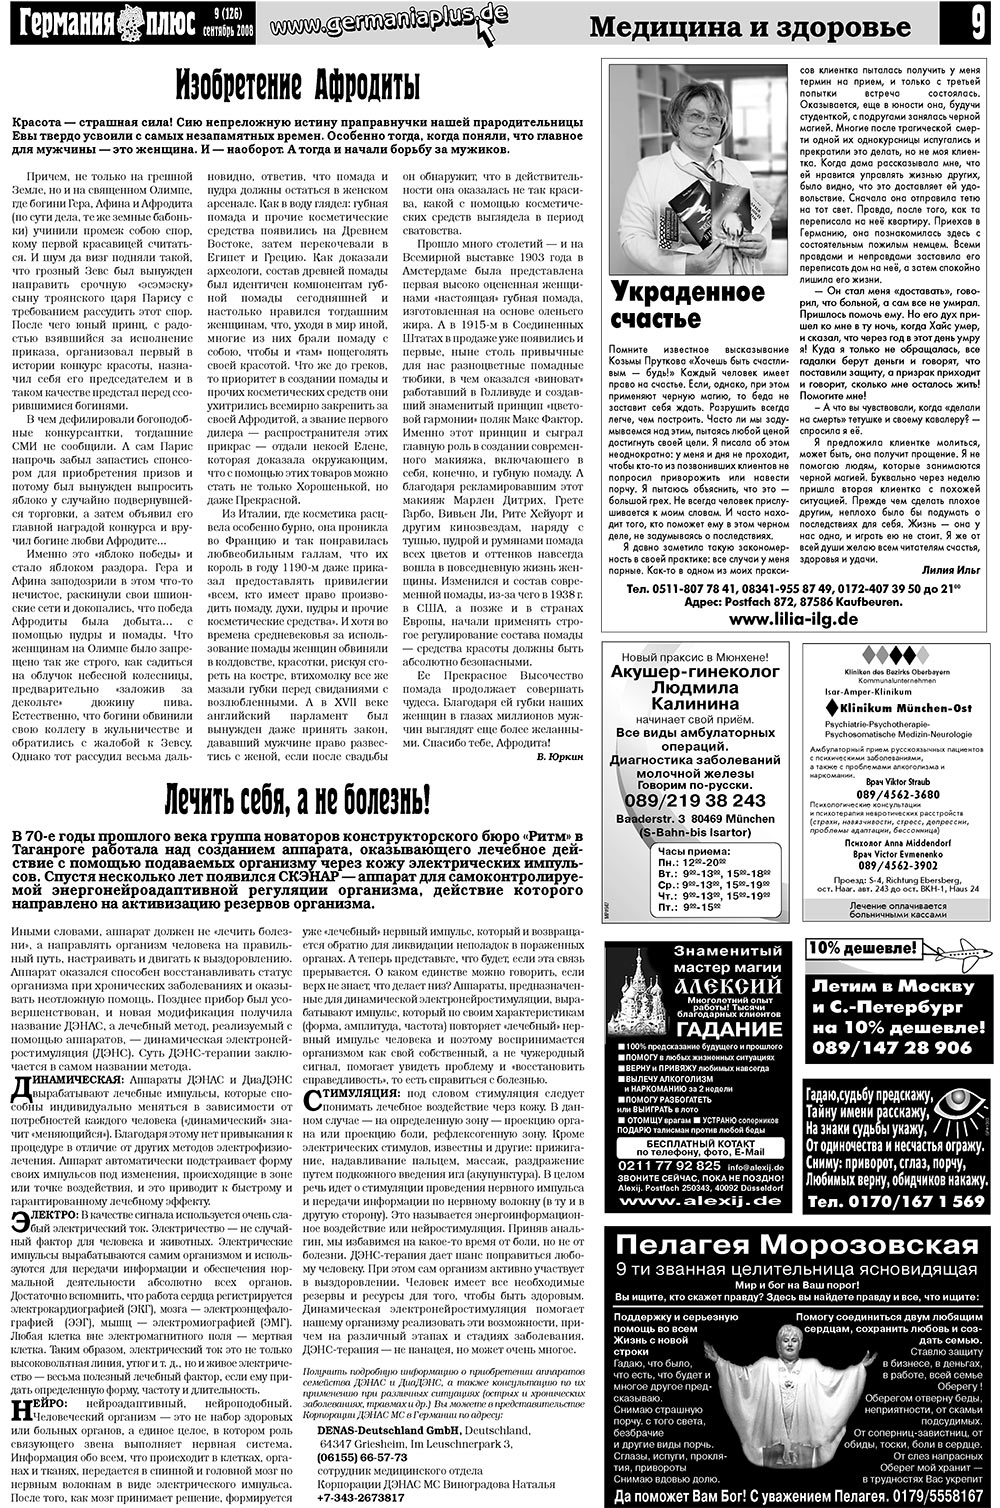 Германия плюс (газета). 2008 год, номер 9, стр. 13